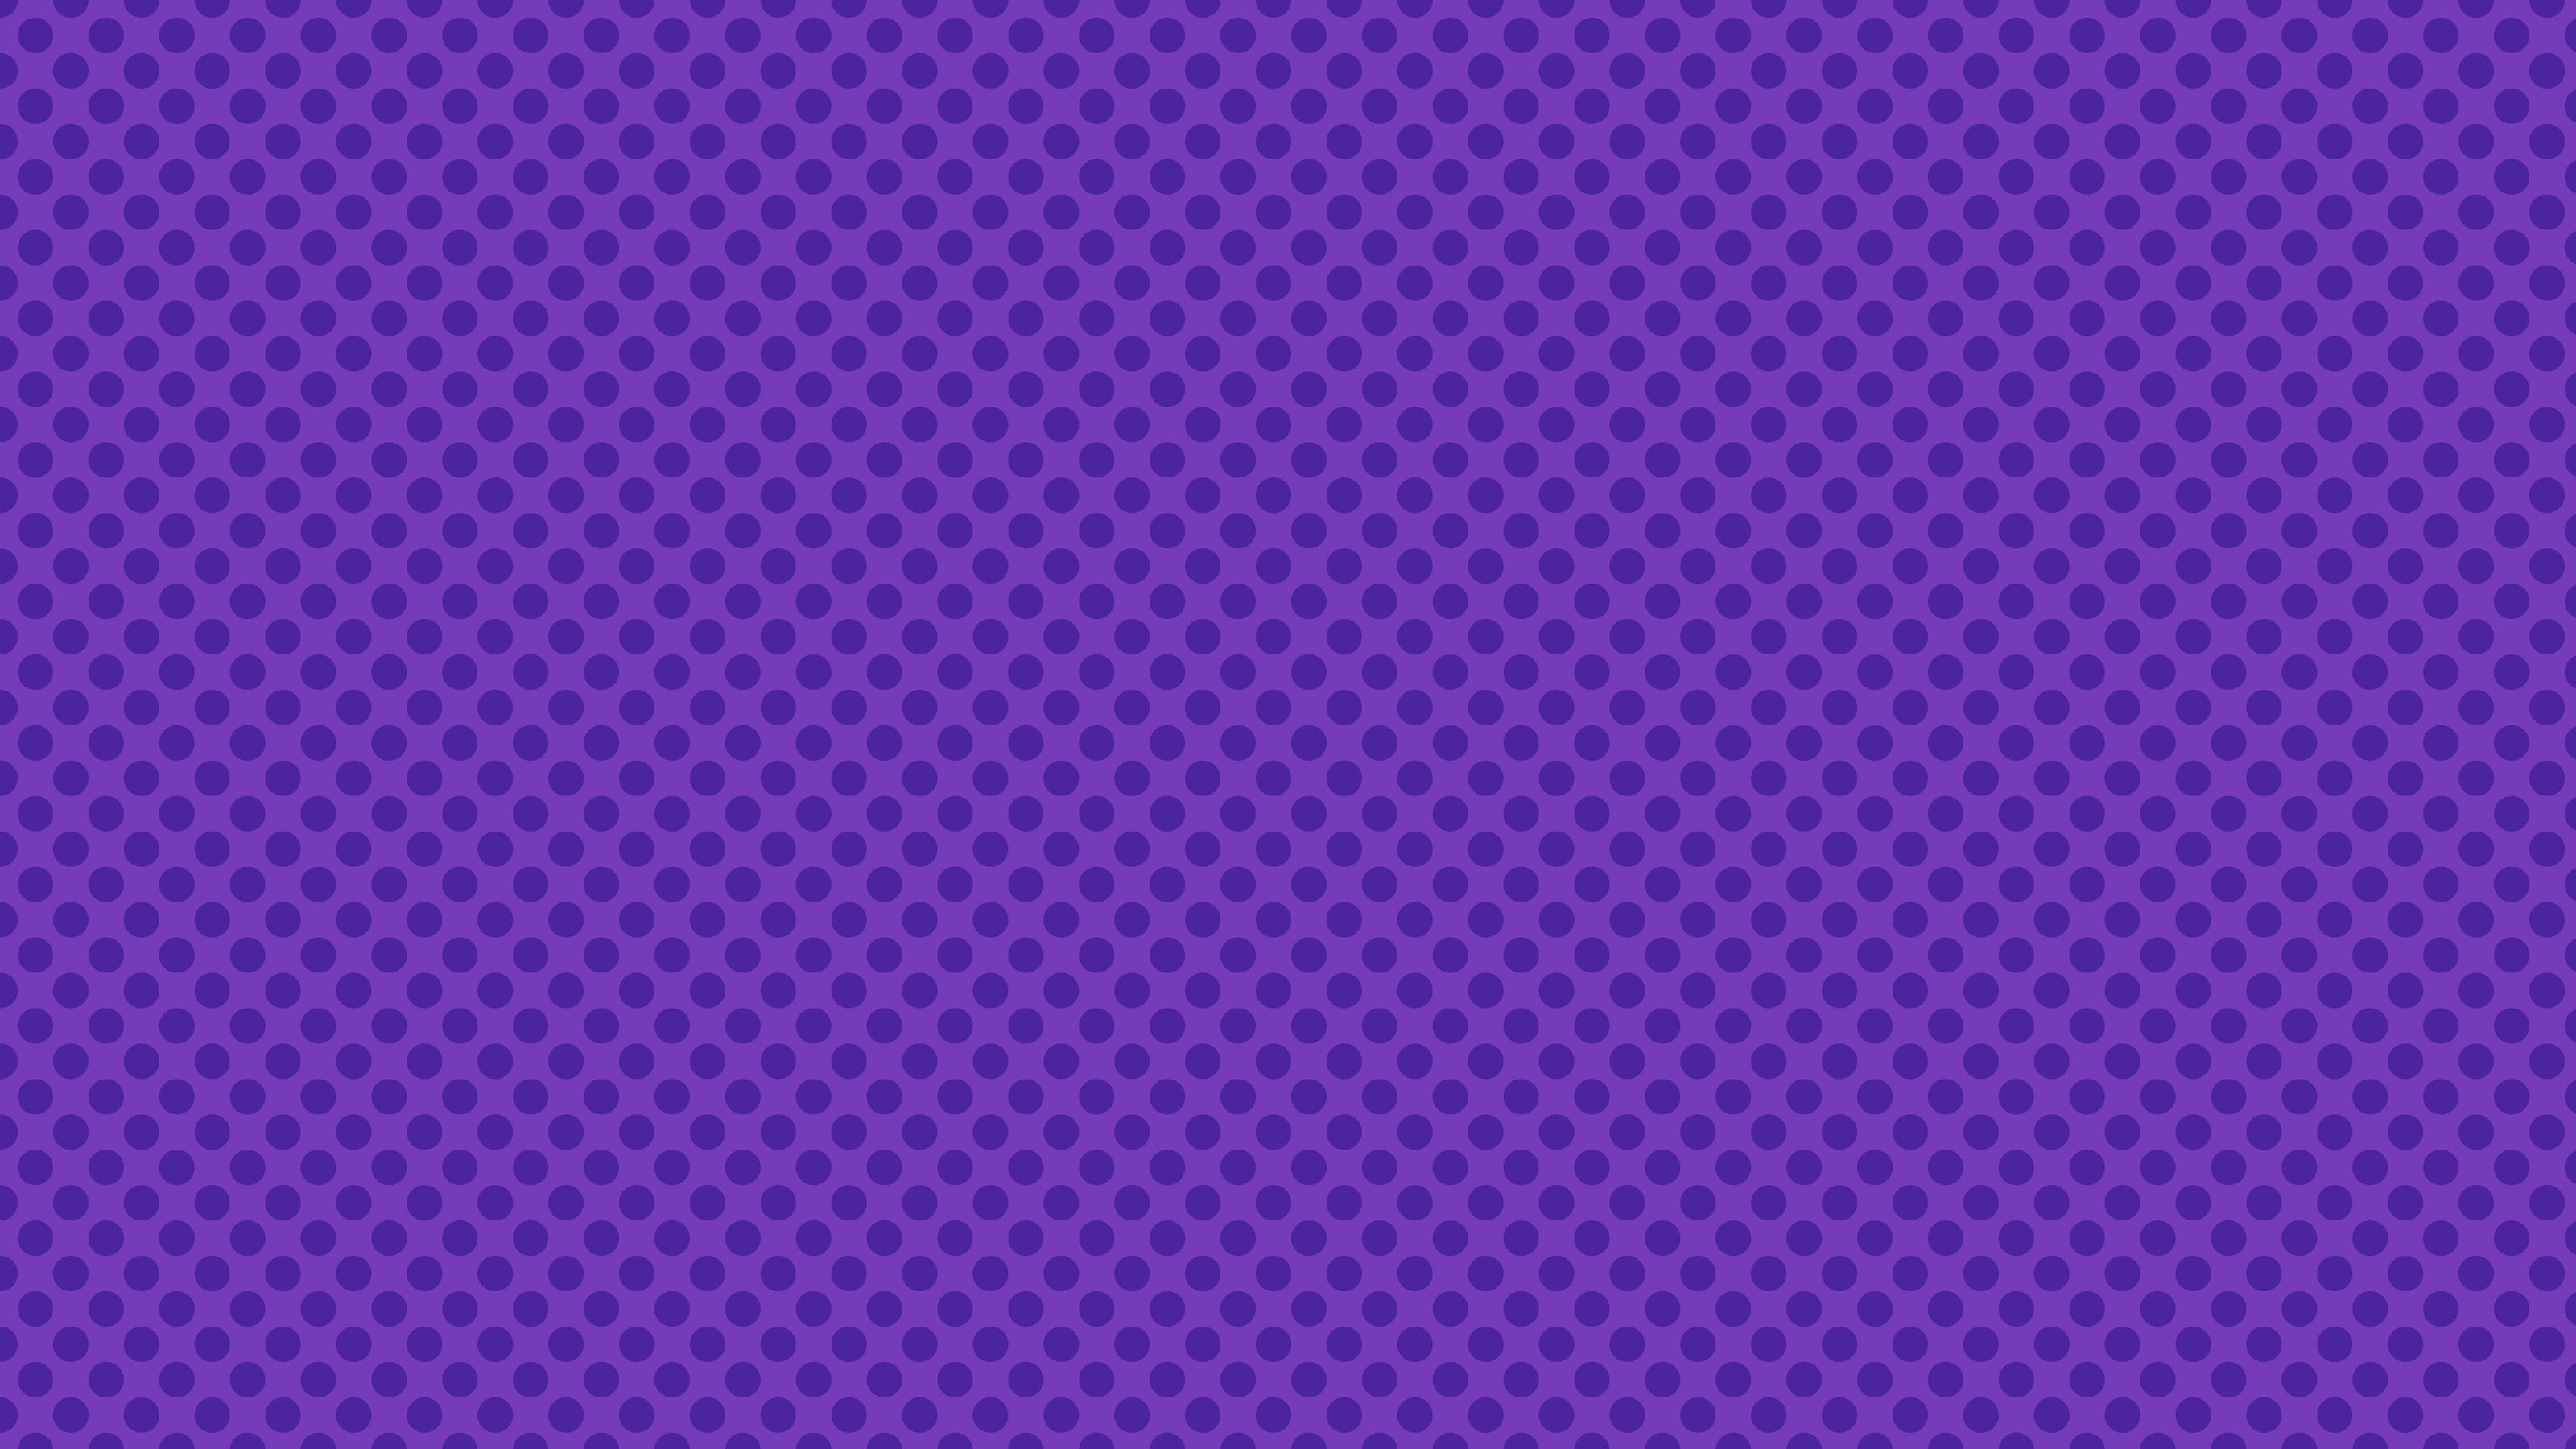 Ben Day Dots Purple, by Studio Ten Design